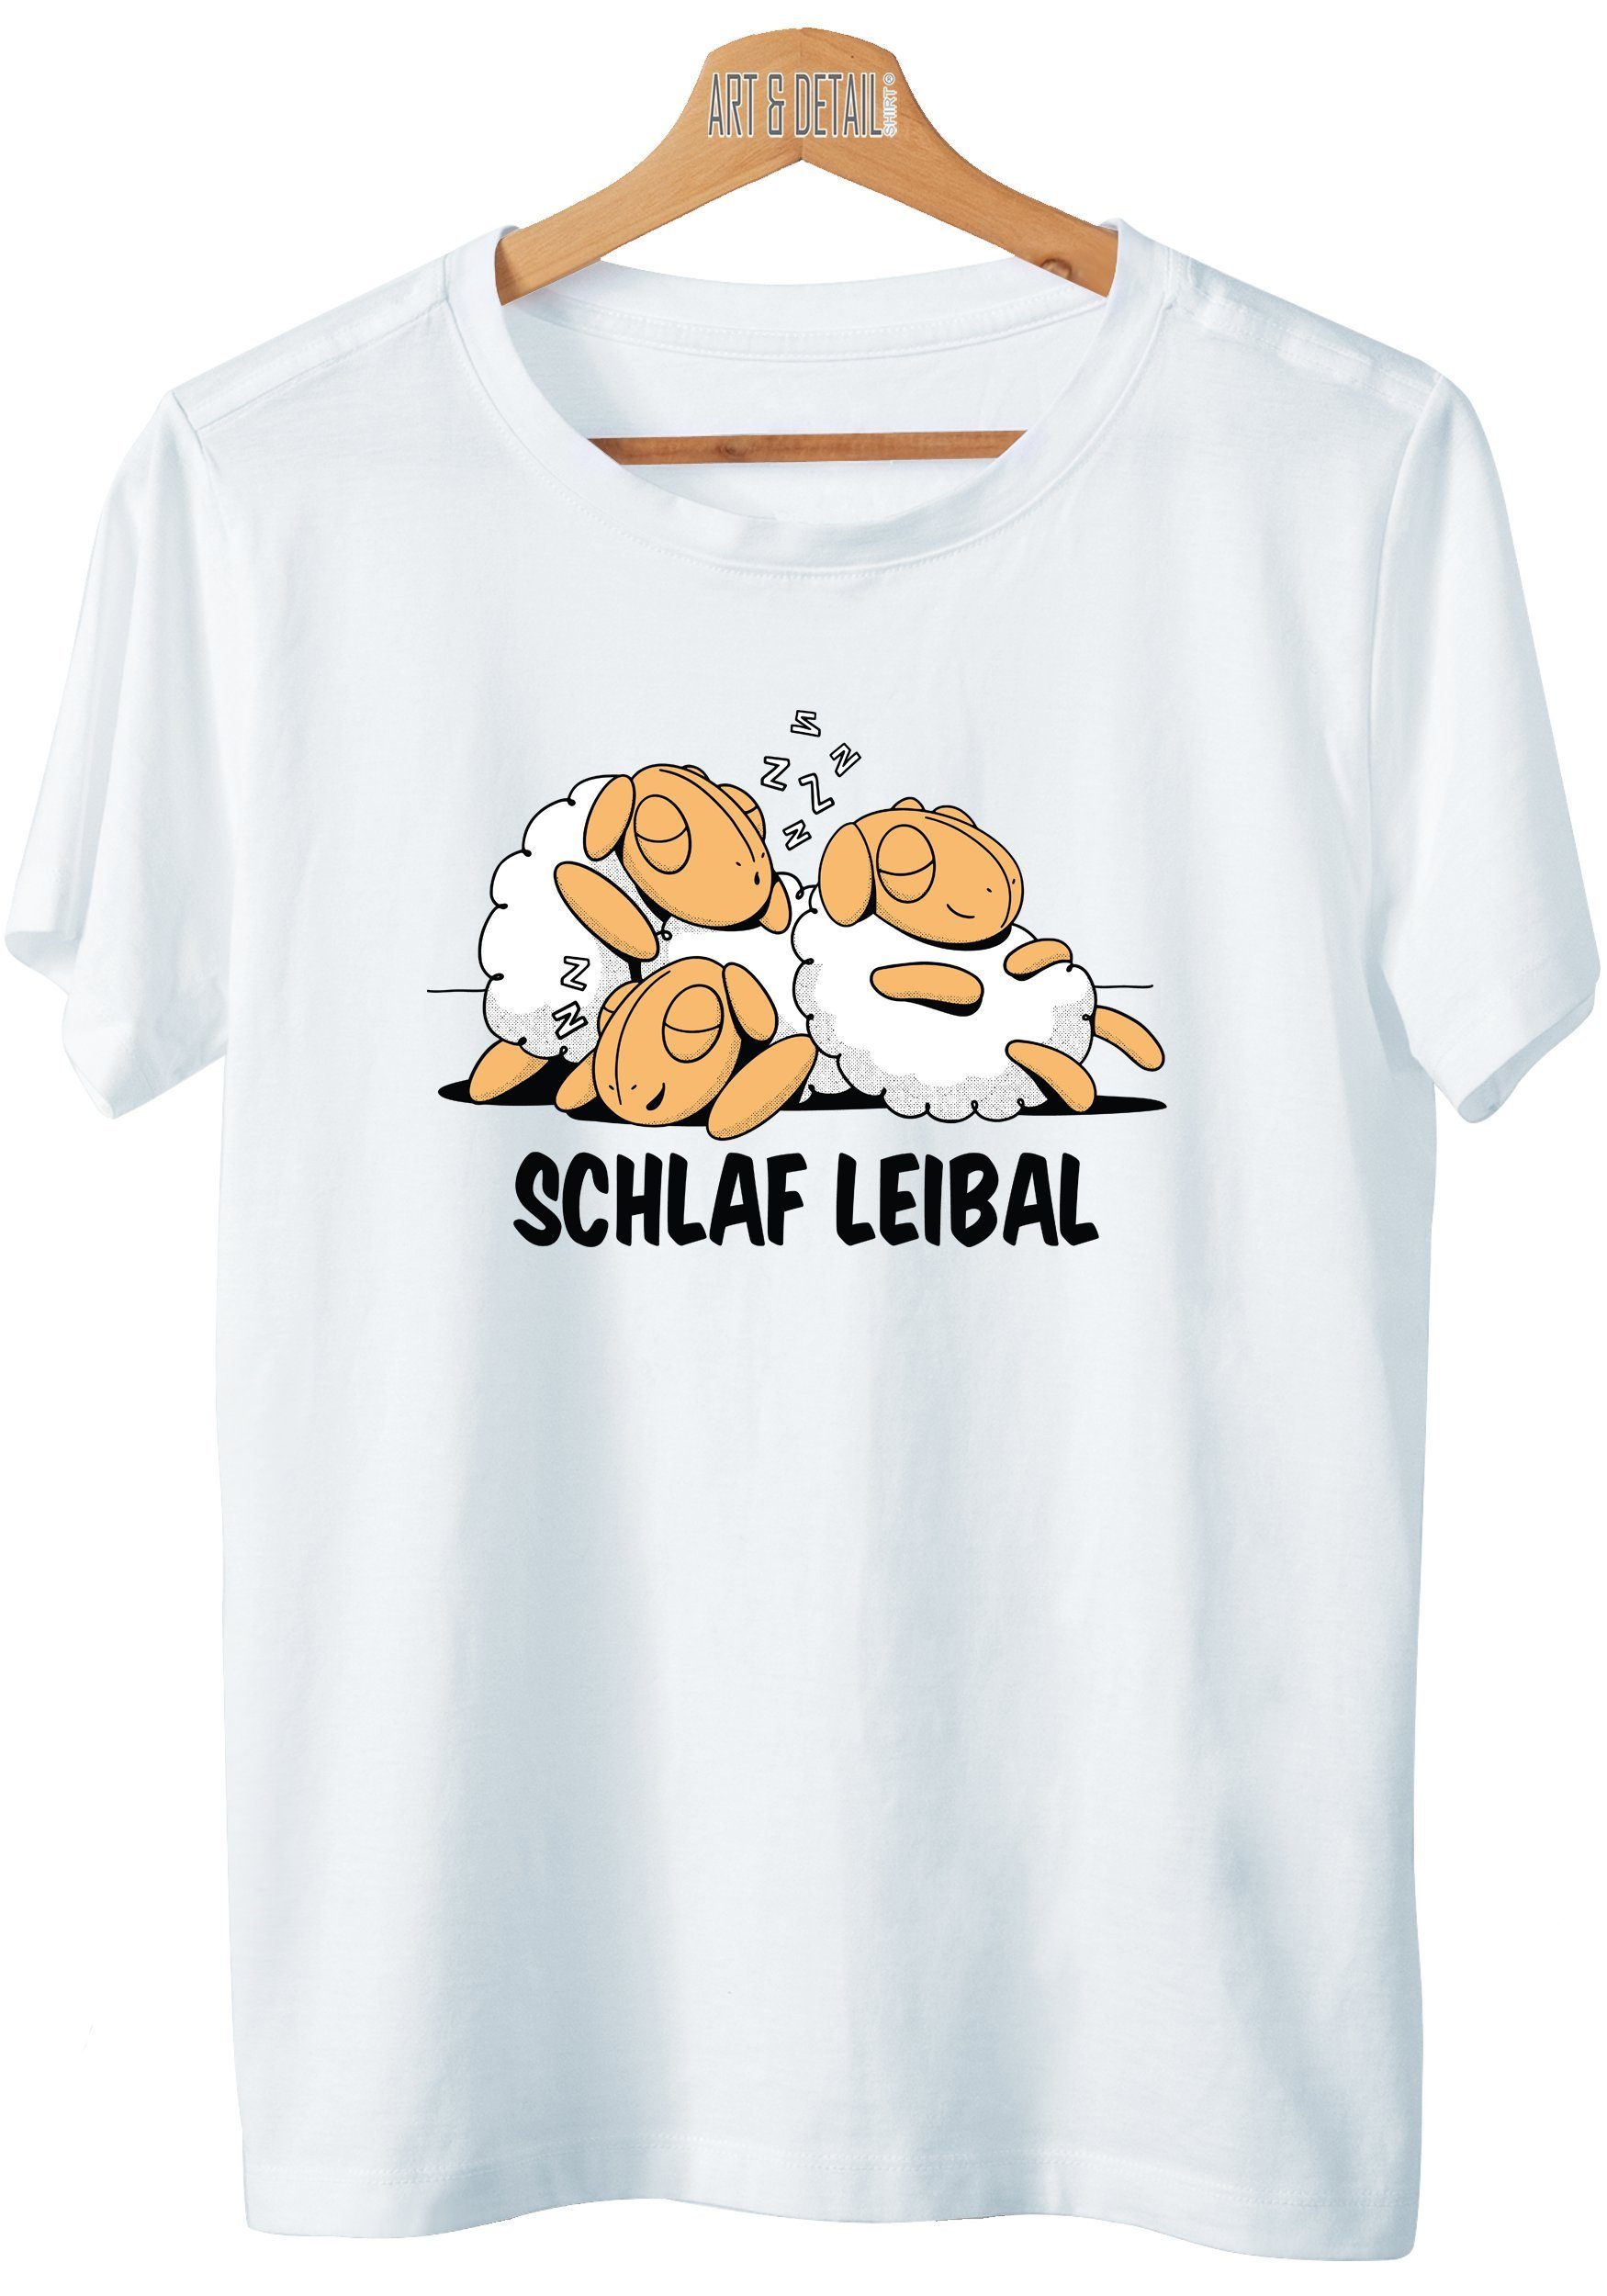 Art & Detail Shirt T-Shirt Offizielles Schlafshirt mit Schafen Schlaf Leibal Nachthemd Sprüche, Schlafen